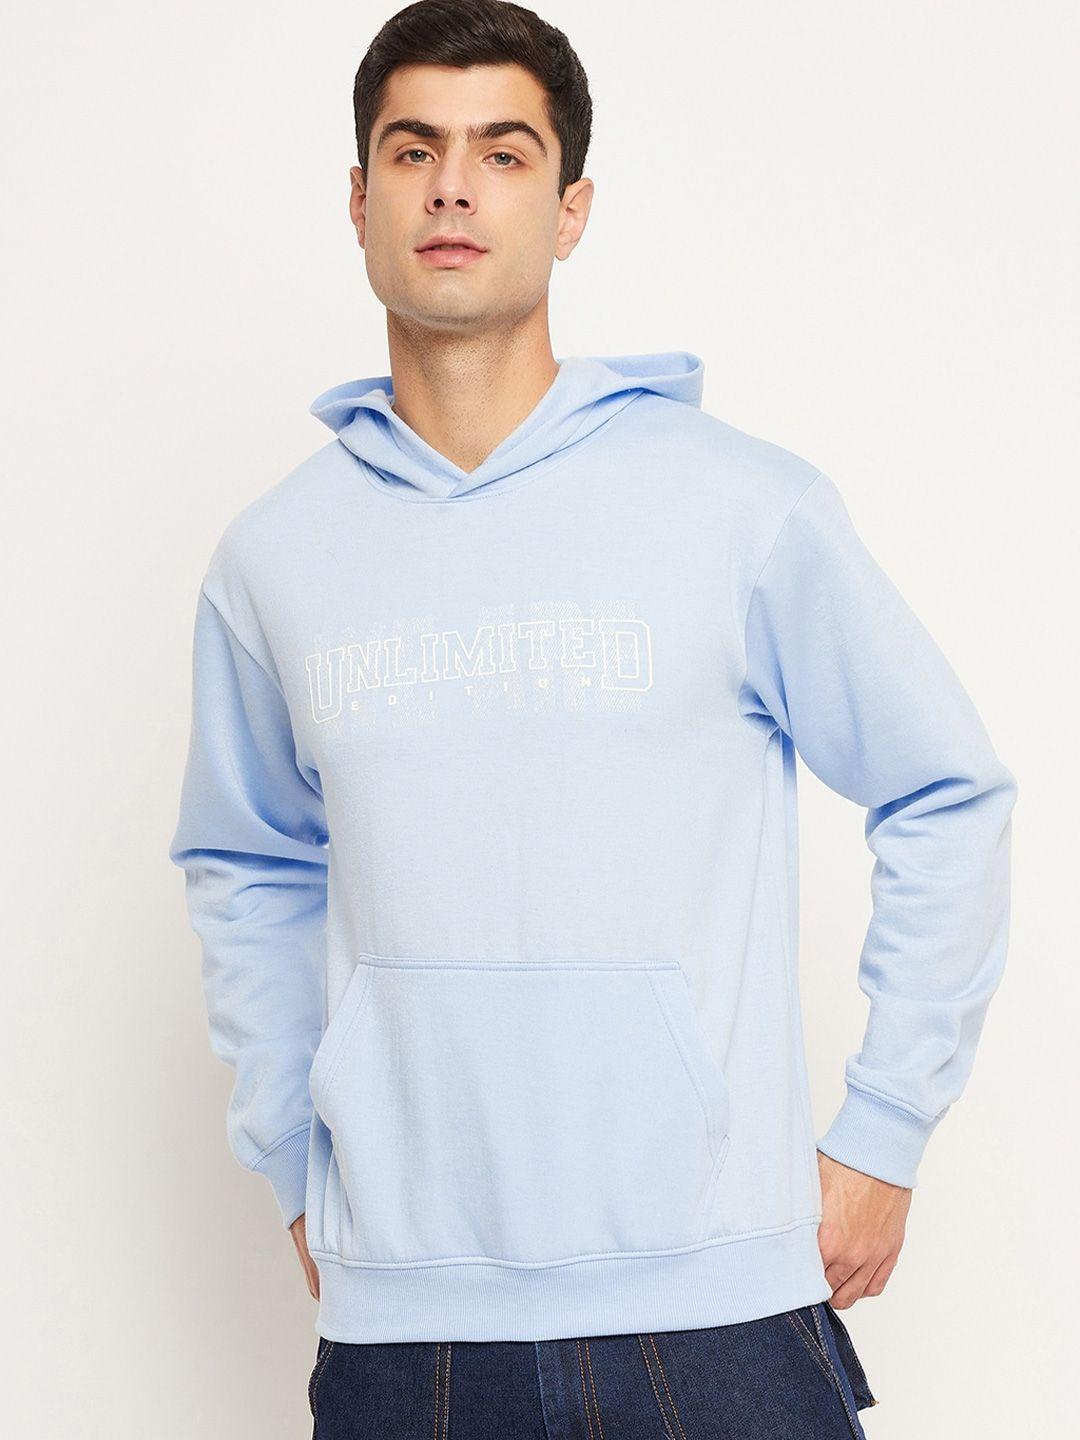 strop typographic printed hooded fleece sweatshirt